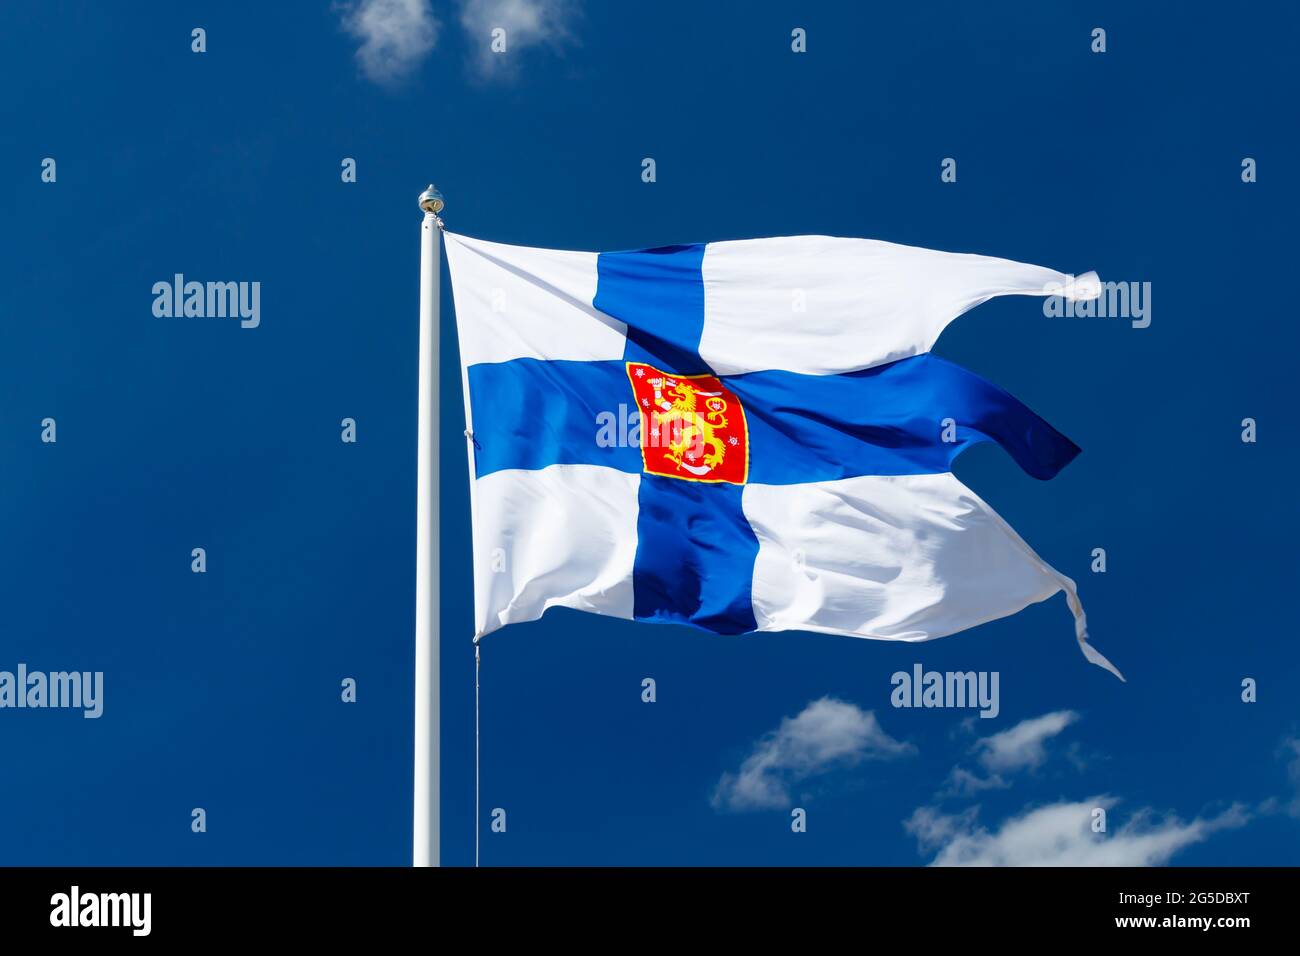 Drapeau national de la Finlande avec armoiries nationales contre le ciel bleu sur le vent Banque D'Images